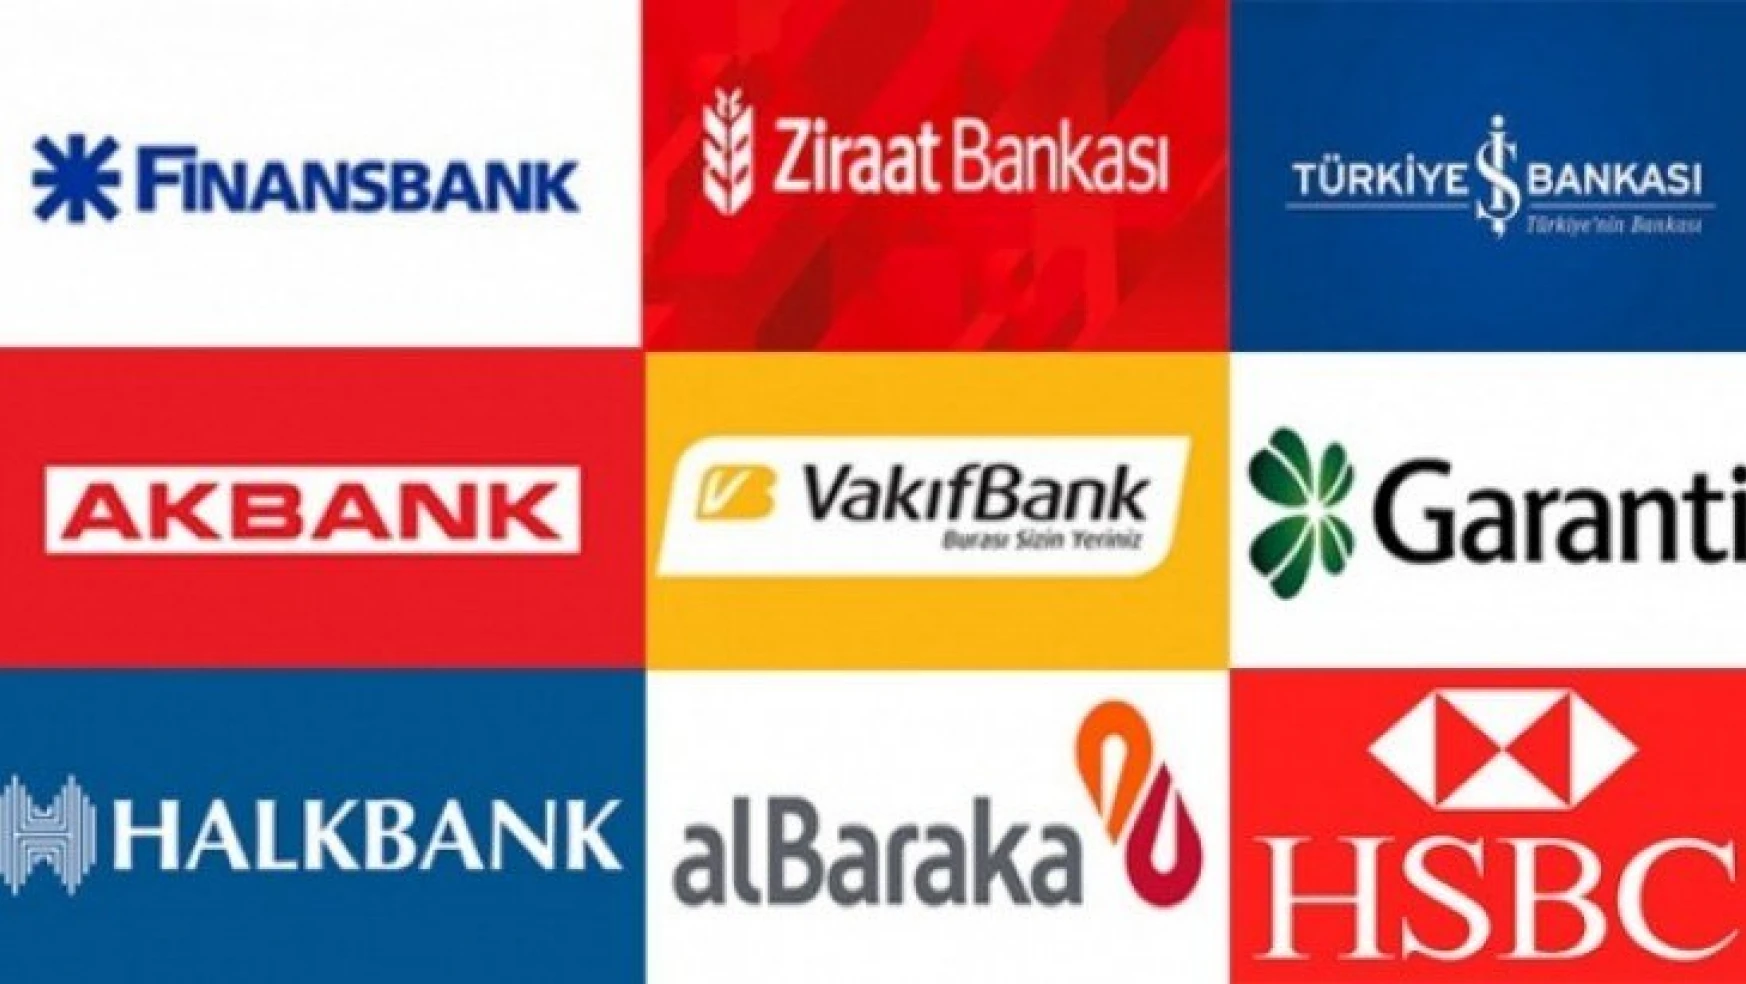 Hem vatandaş hem iş dünyası isyanda! Bankalar Türkiye'yi kandırmaya kalktı, oyun ortaya çıktı